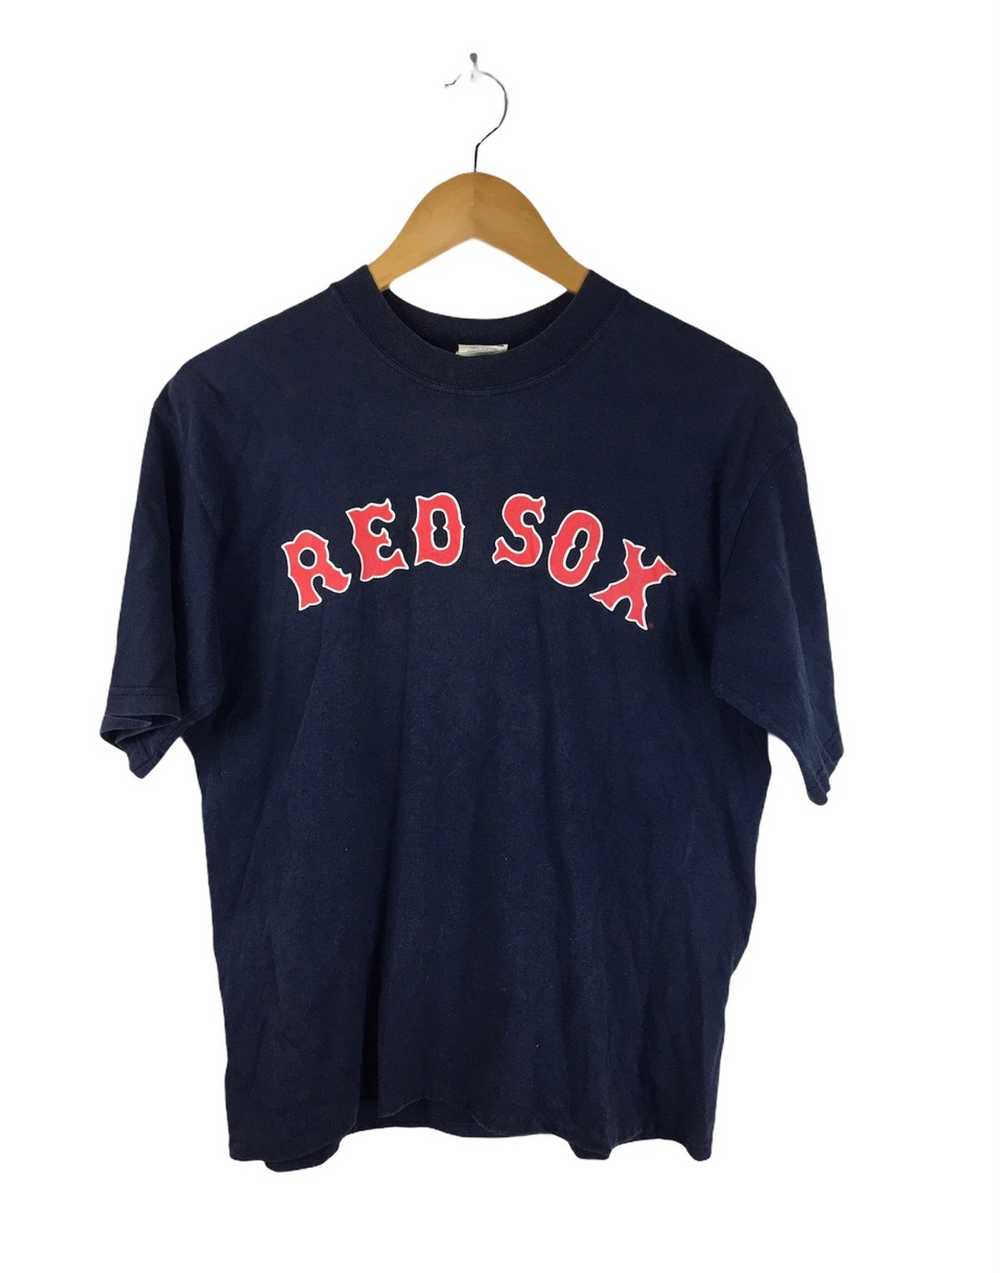 Majestic Boston Red Sox MANNY RAMIREZ 2004 World Series Baseball JERSEY  GRAY